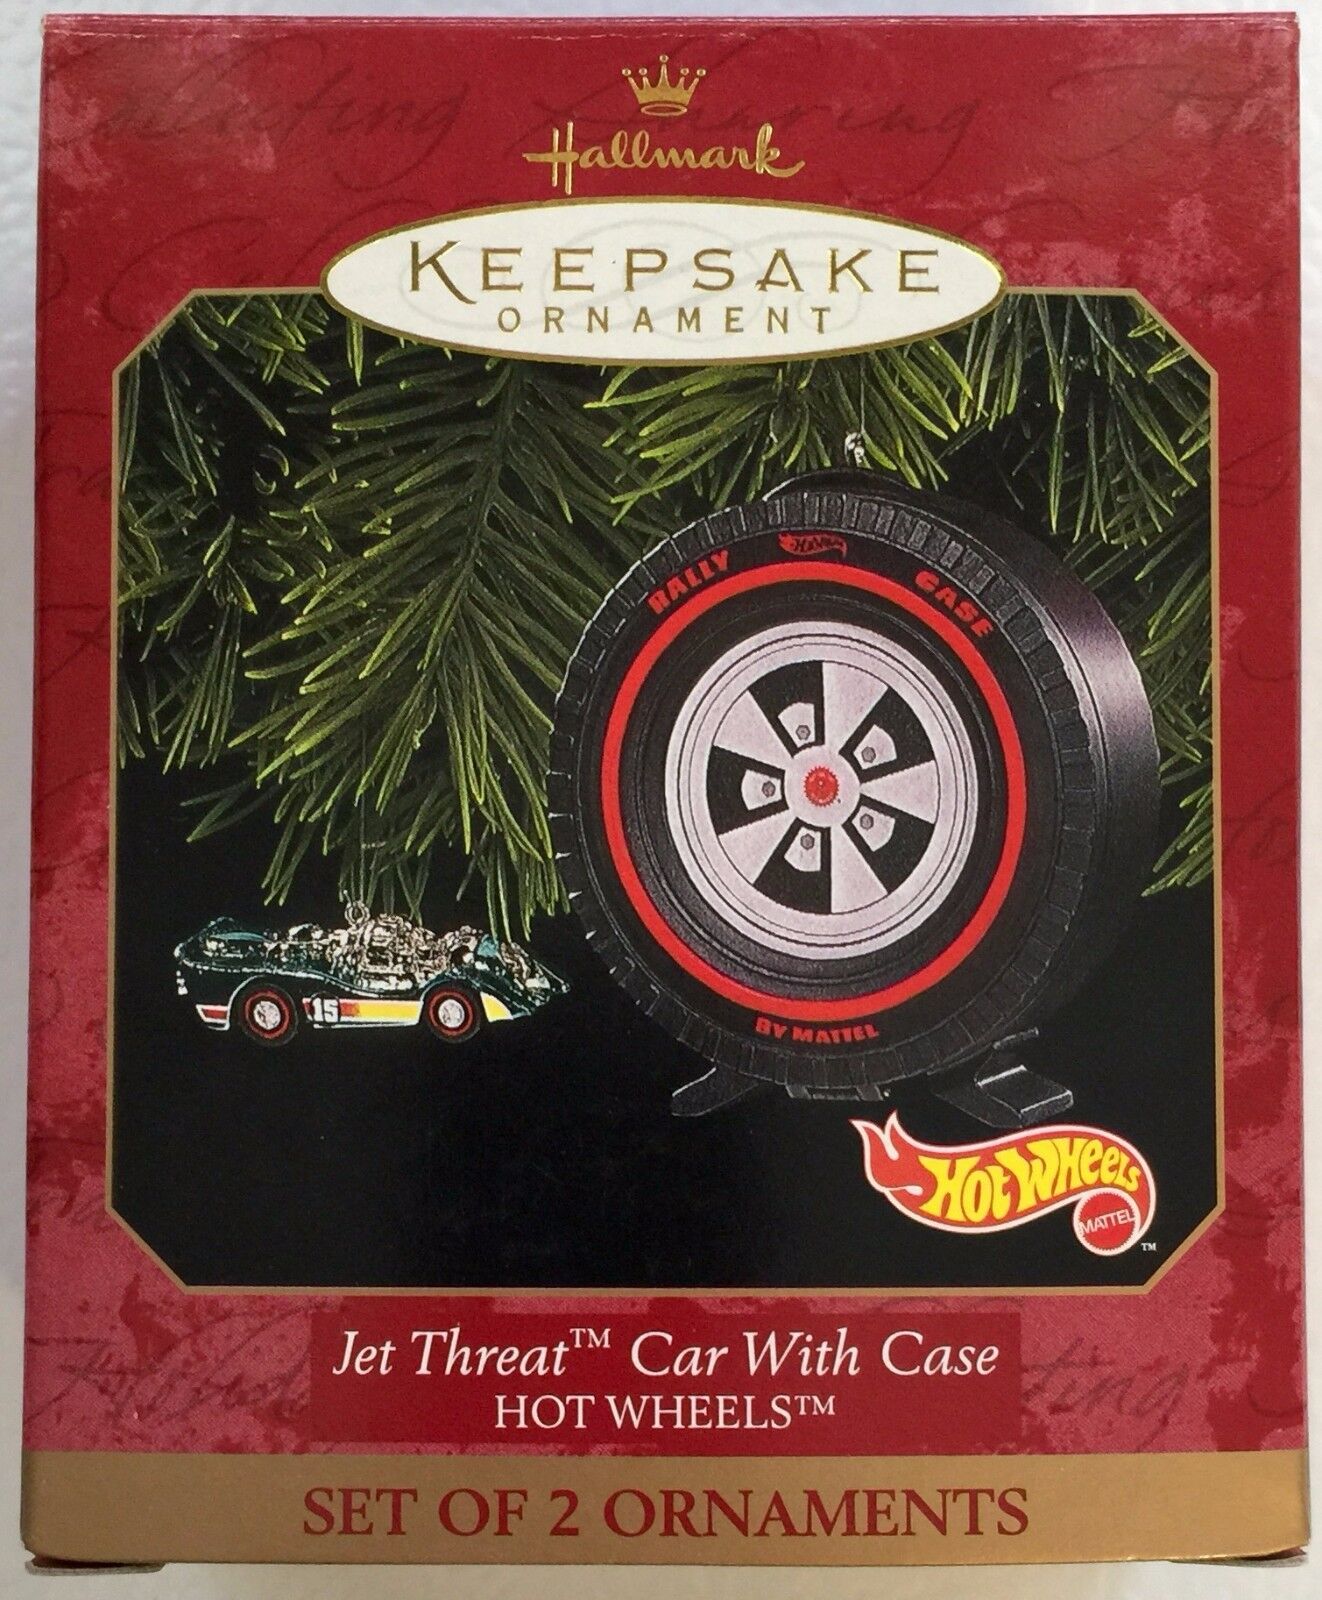 Hot Wheels Keepsake Ornament, Jet Threat Car & Case #06527 (set of 2 ornaments)